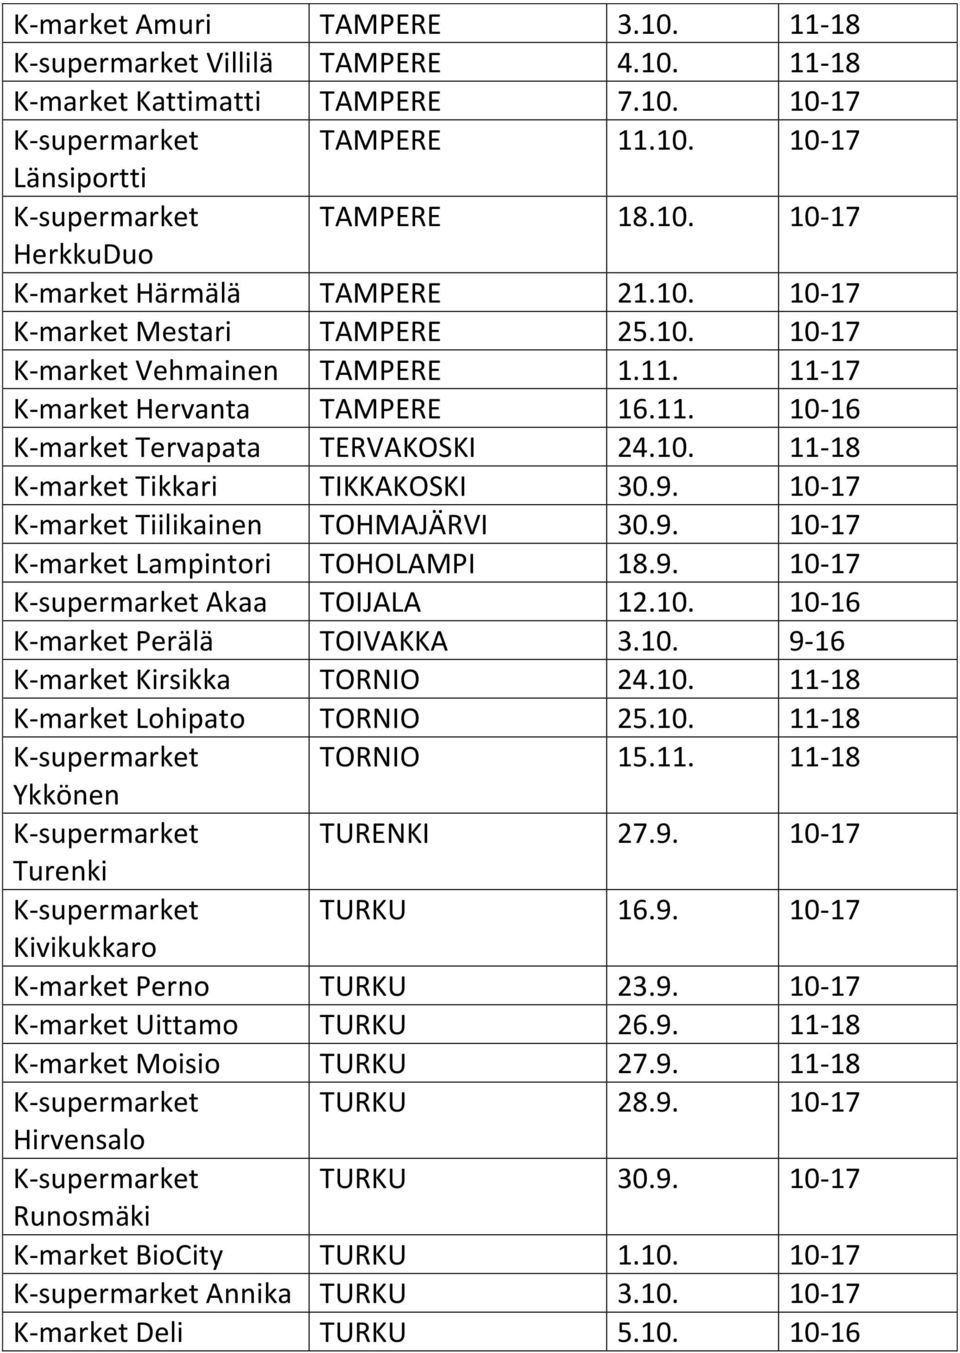 9. 10-17 K-market Tiilikainen TOHMAJÄRVI 30.9. 10-17 K-market Lampintori TOHOLAMPI 18.9. 10-17 K-supermarket Akaa TOIJALA 12.10. 10-16 K-market Perälä TOIVAKKA 3.10. 9-16 K-market Kirsikka TORNIO 24.